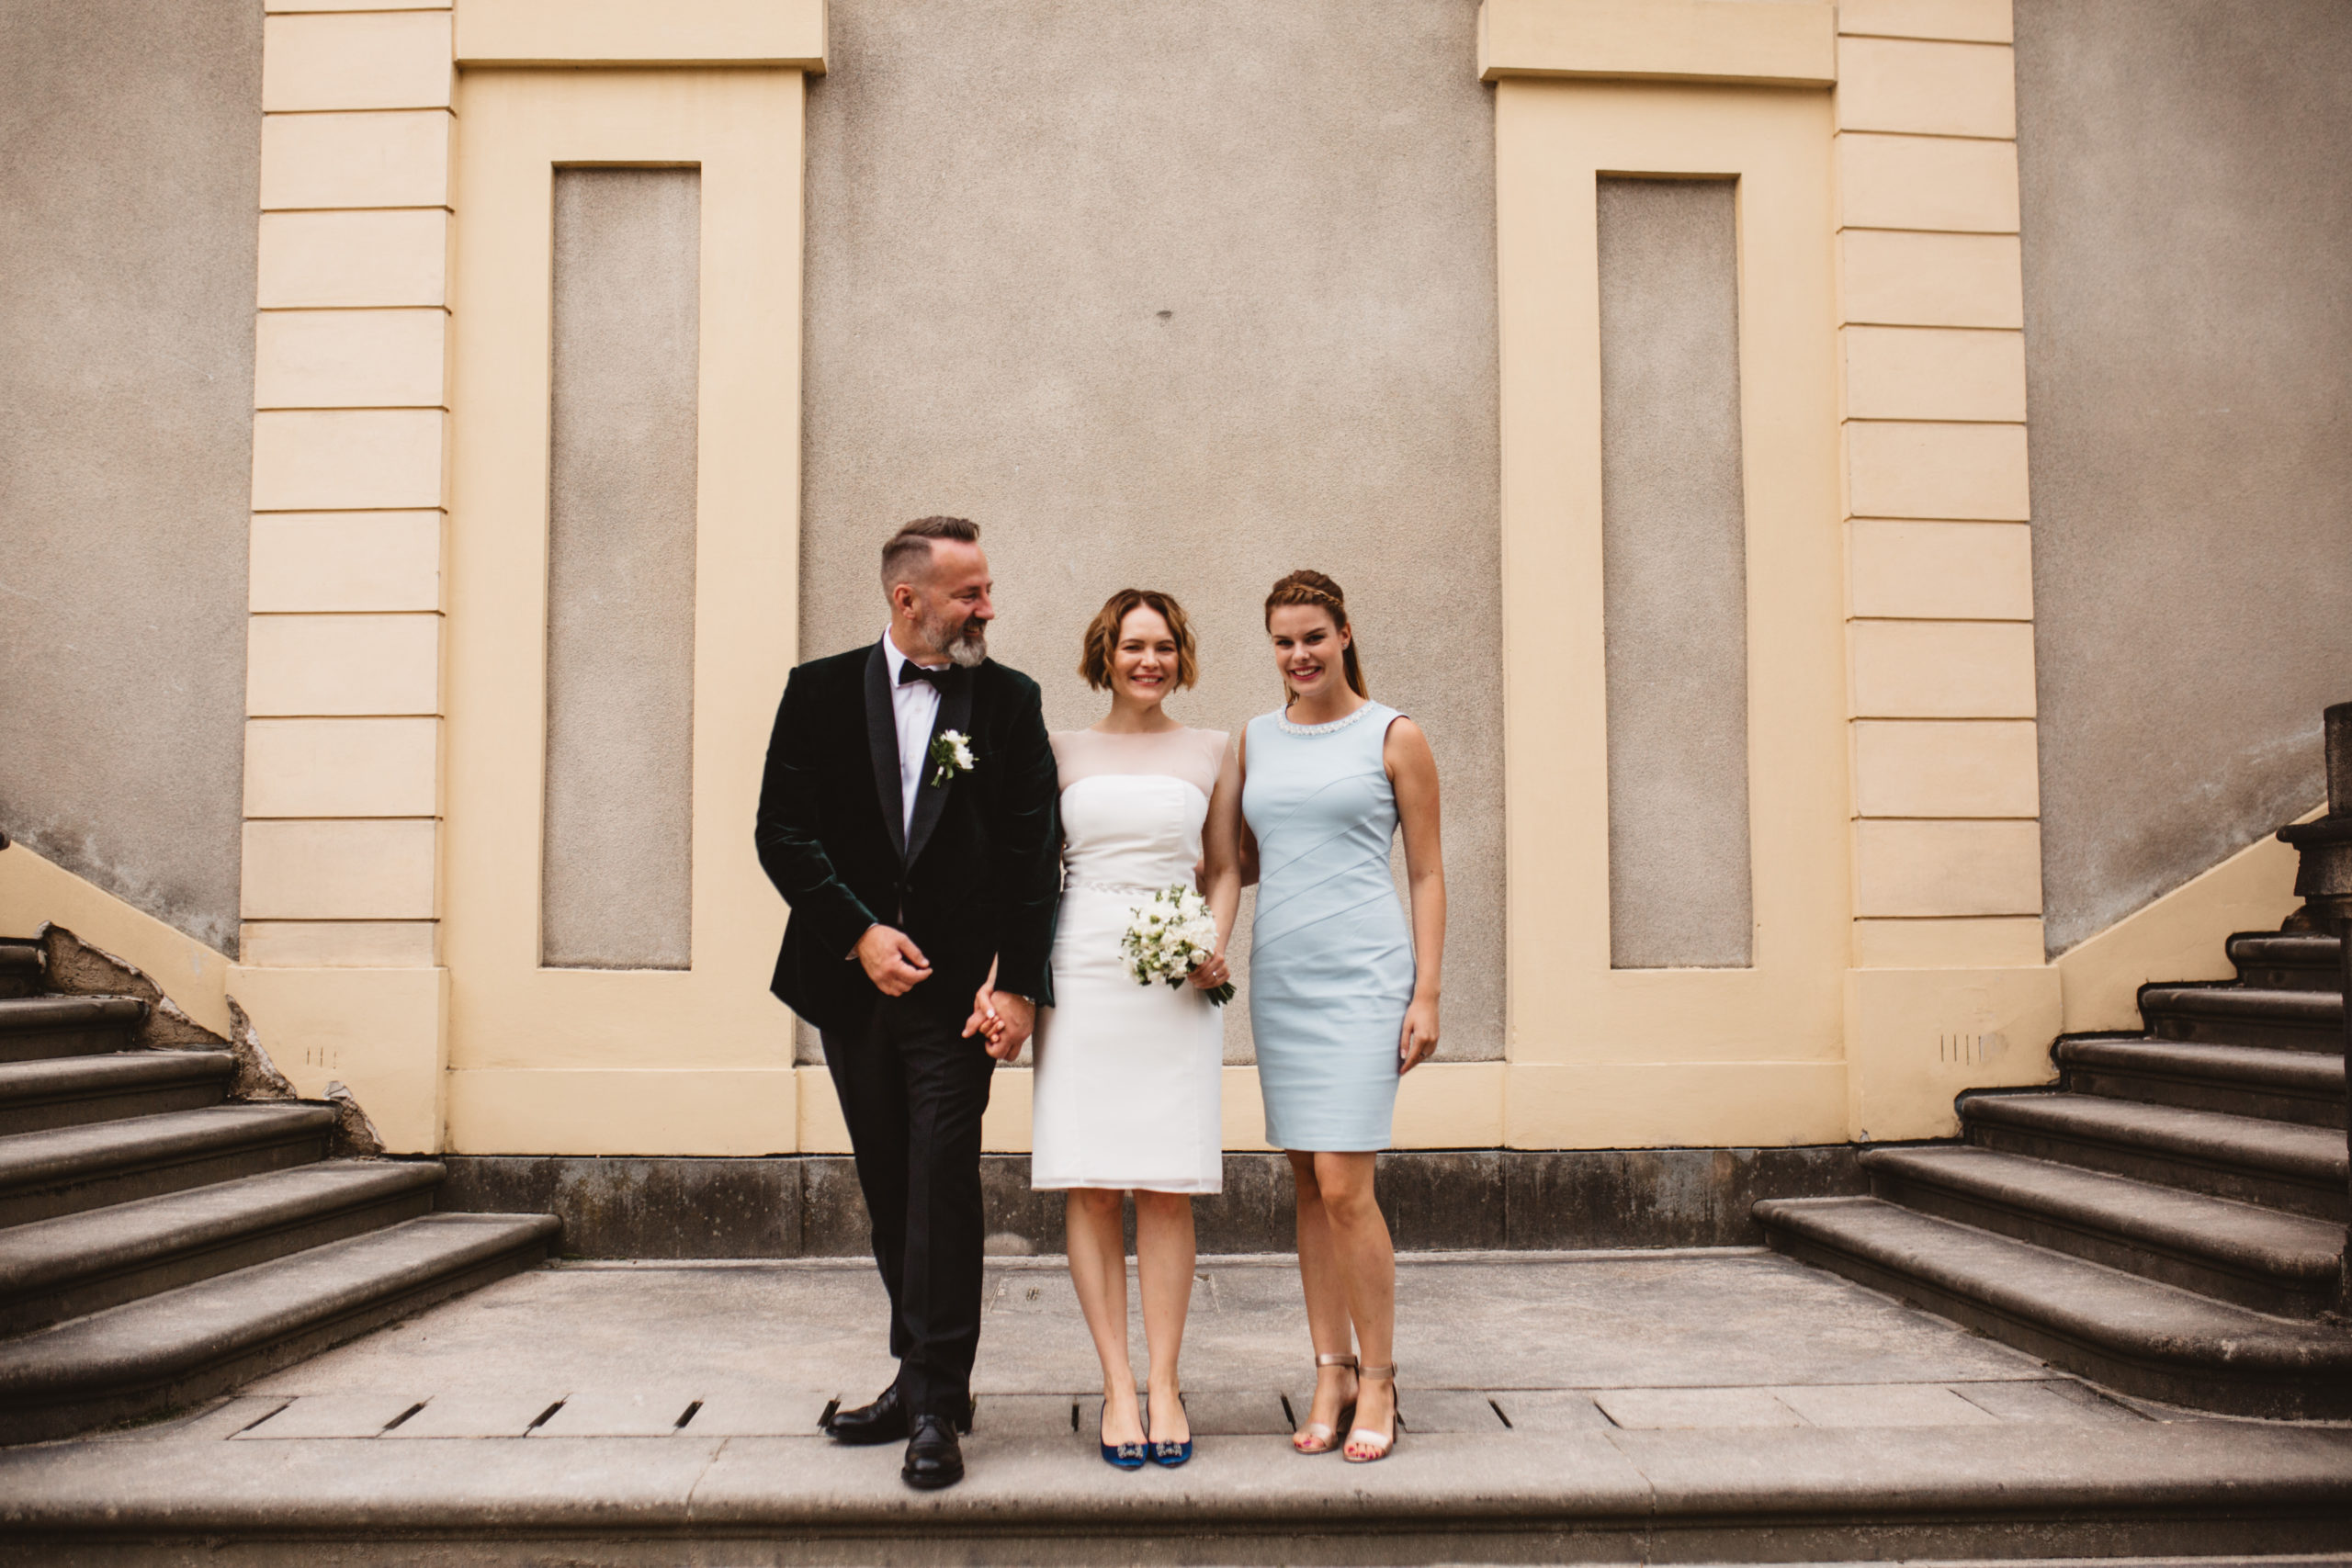 Vrtba Gardens & Werich Villa - Weddings in Prague - Julie May